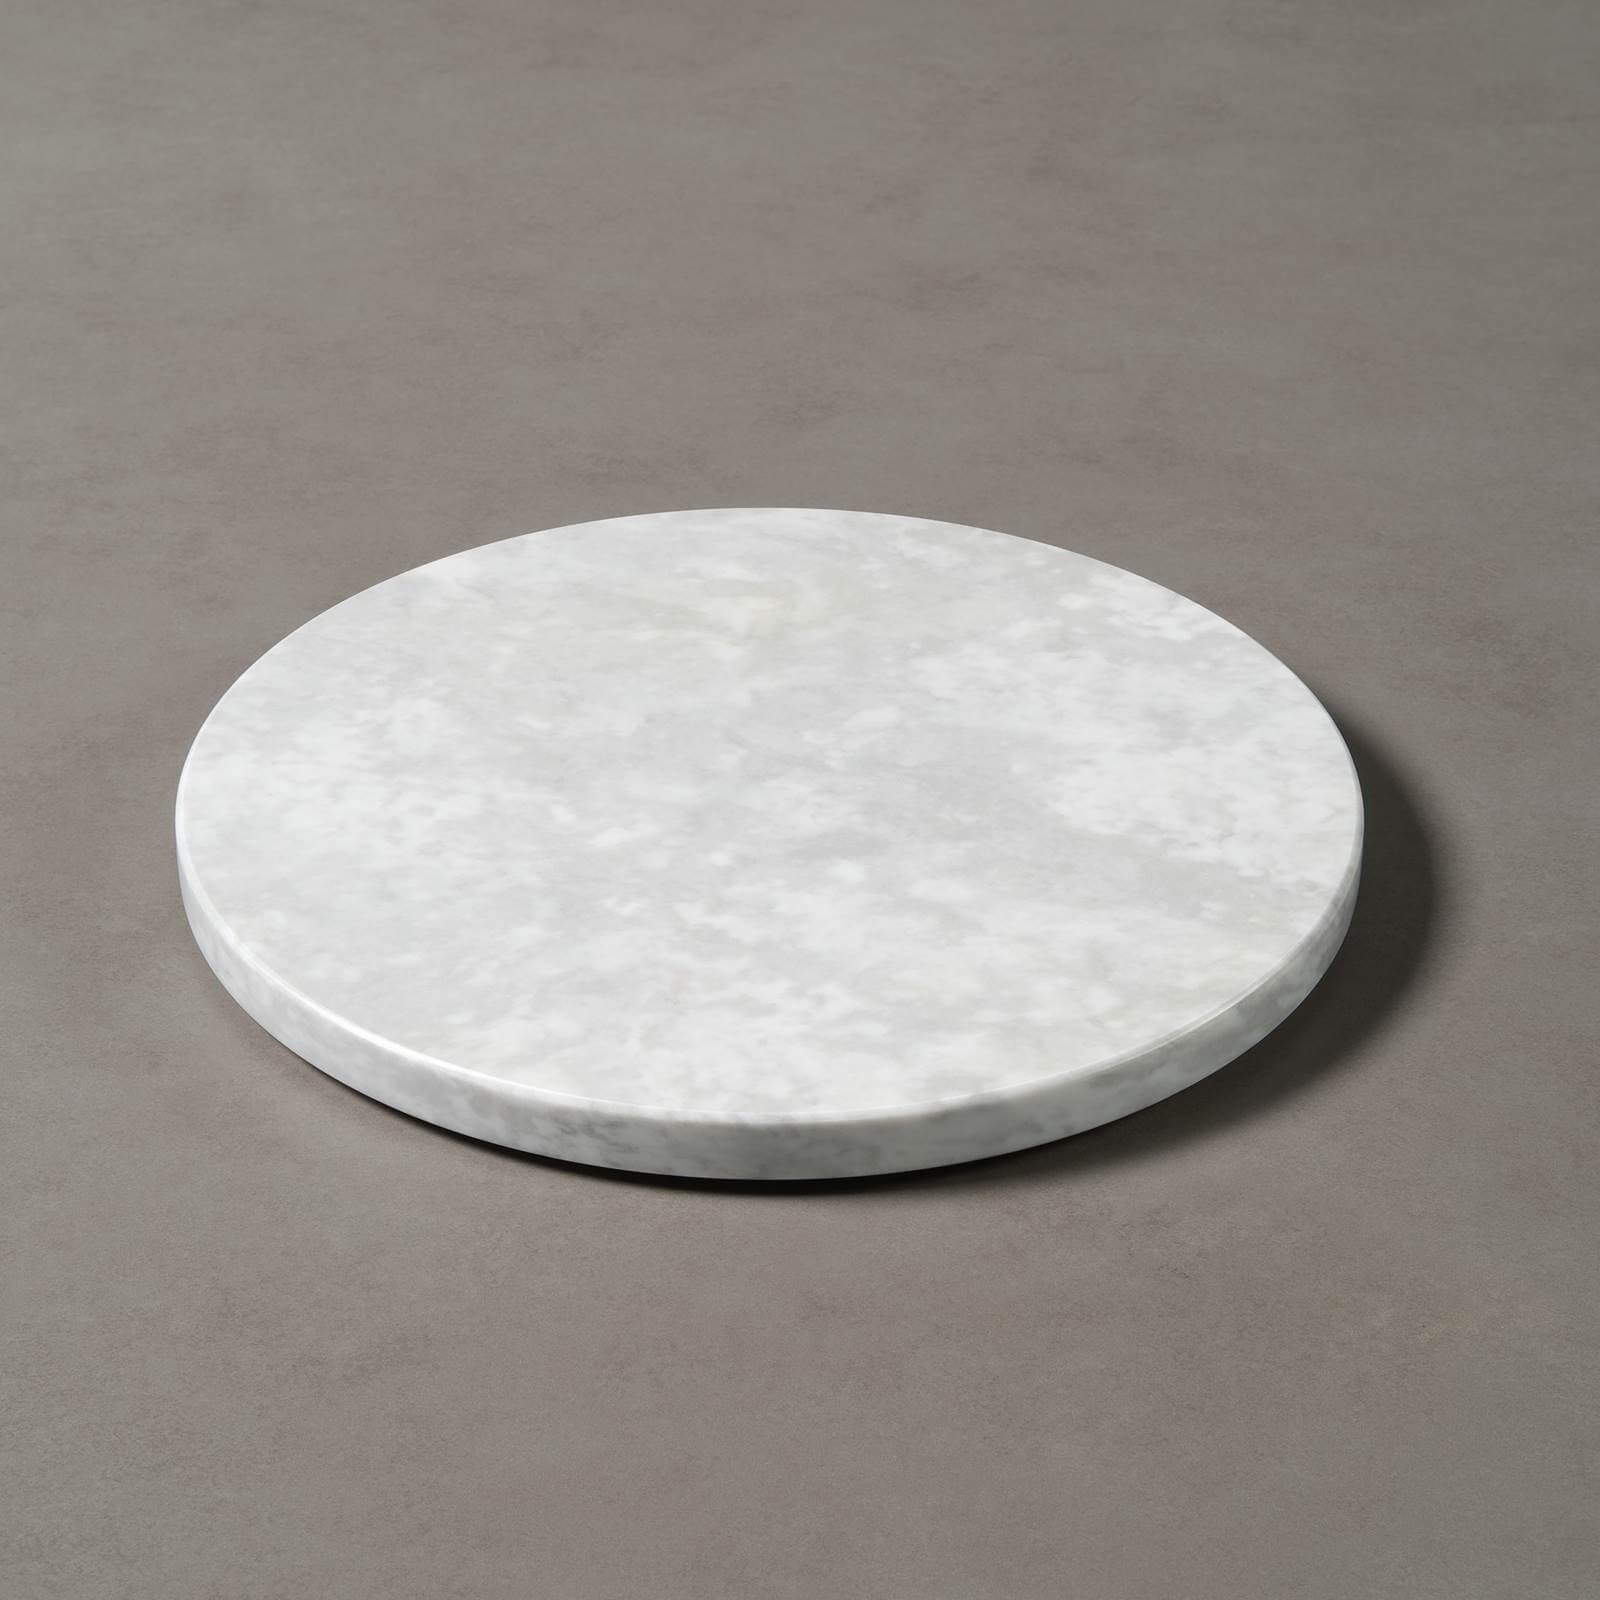 MAGNA Atelier Mamor, ECHTEM Carrara Dekotablett Bianco echter rund, MARMOR, Ø30x2cm Servierplatte, Käseplatte mit CHEFCHAOUEN